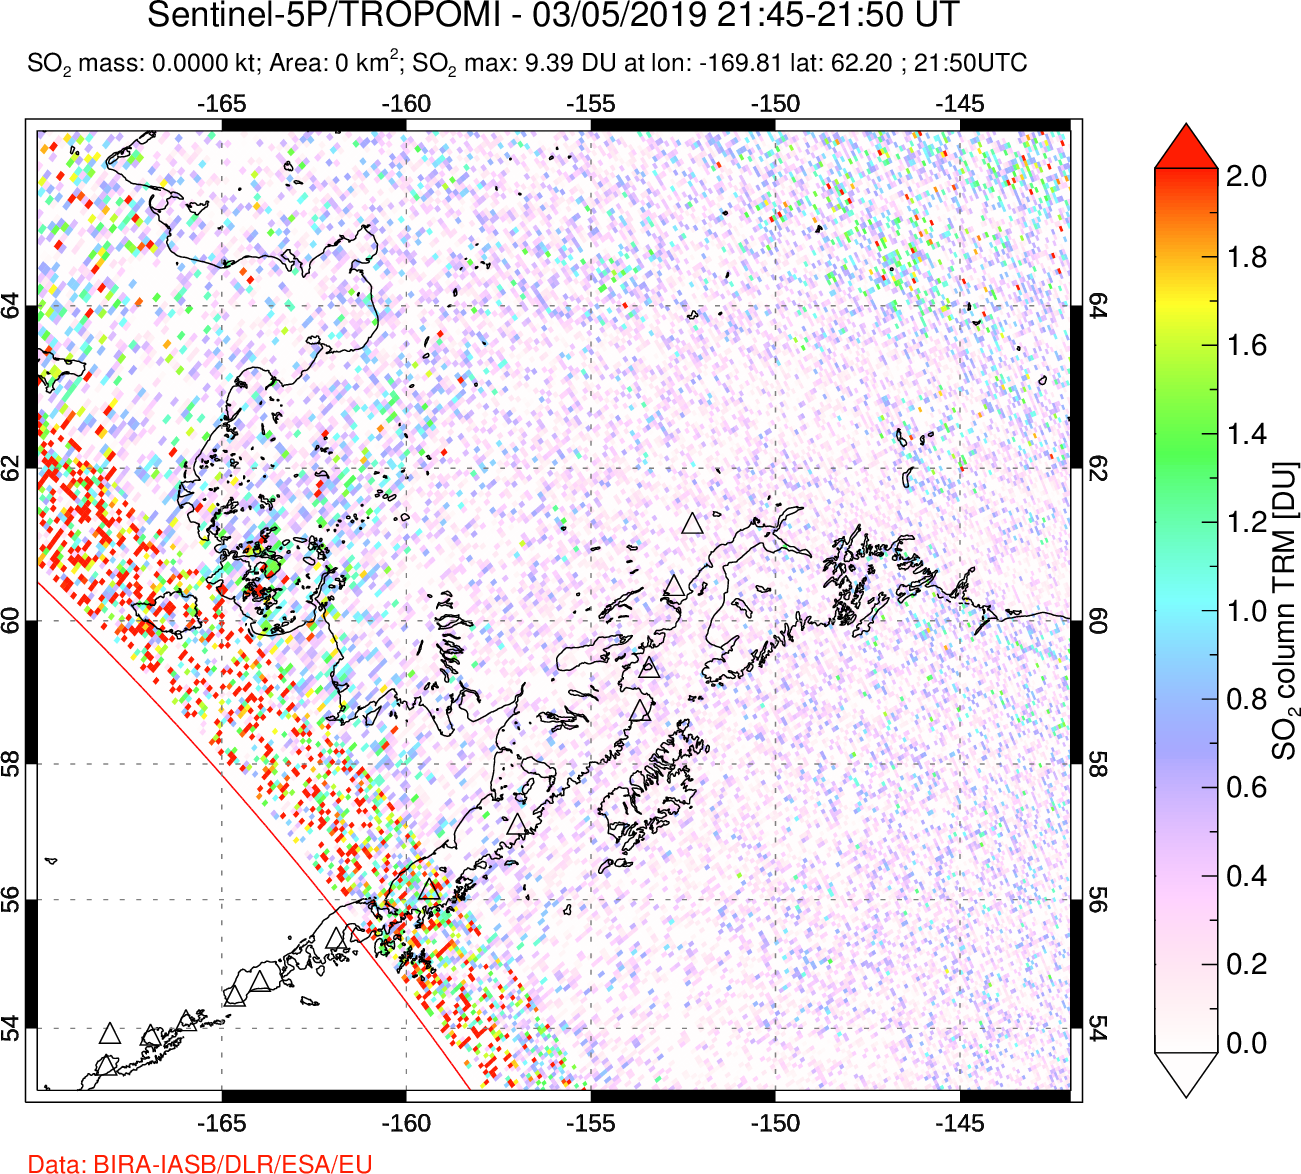 A sulfur dioxide image over Alaska, USA on Mar 05, 2019.